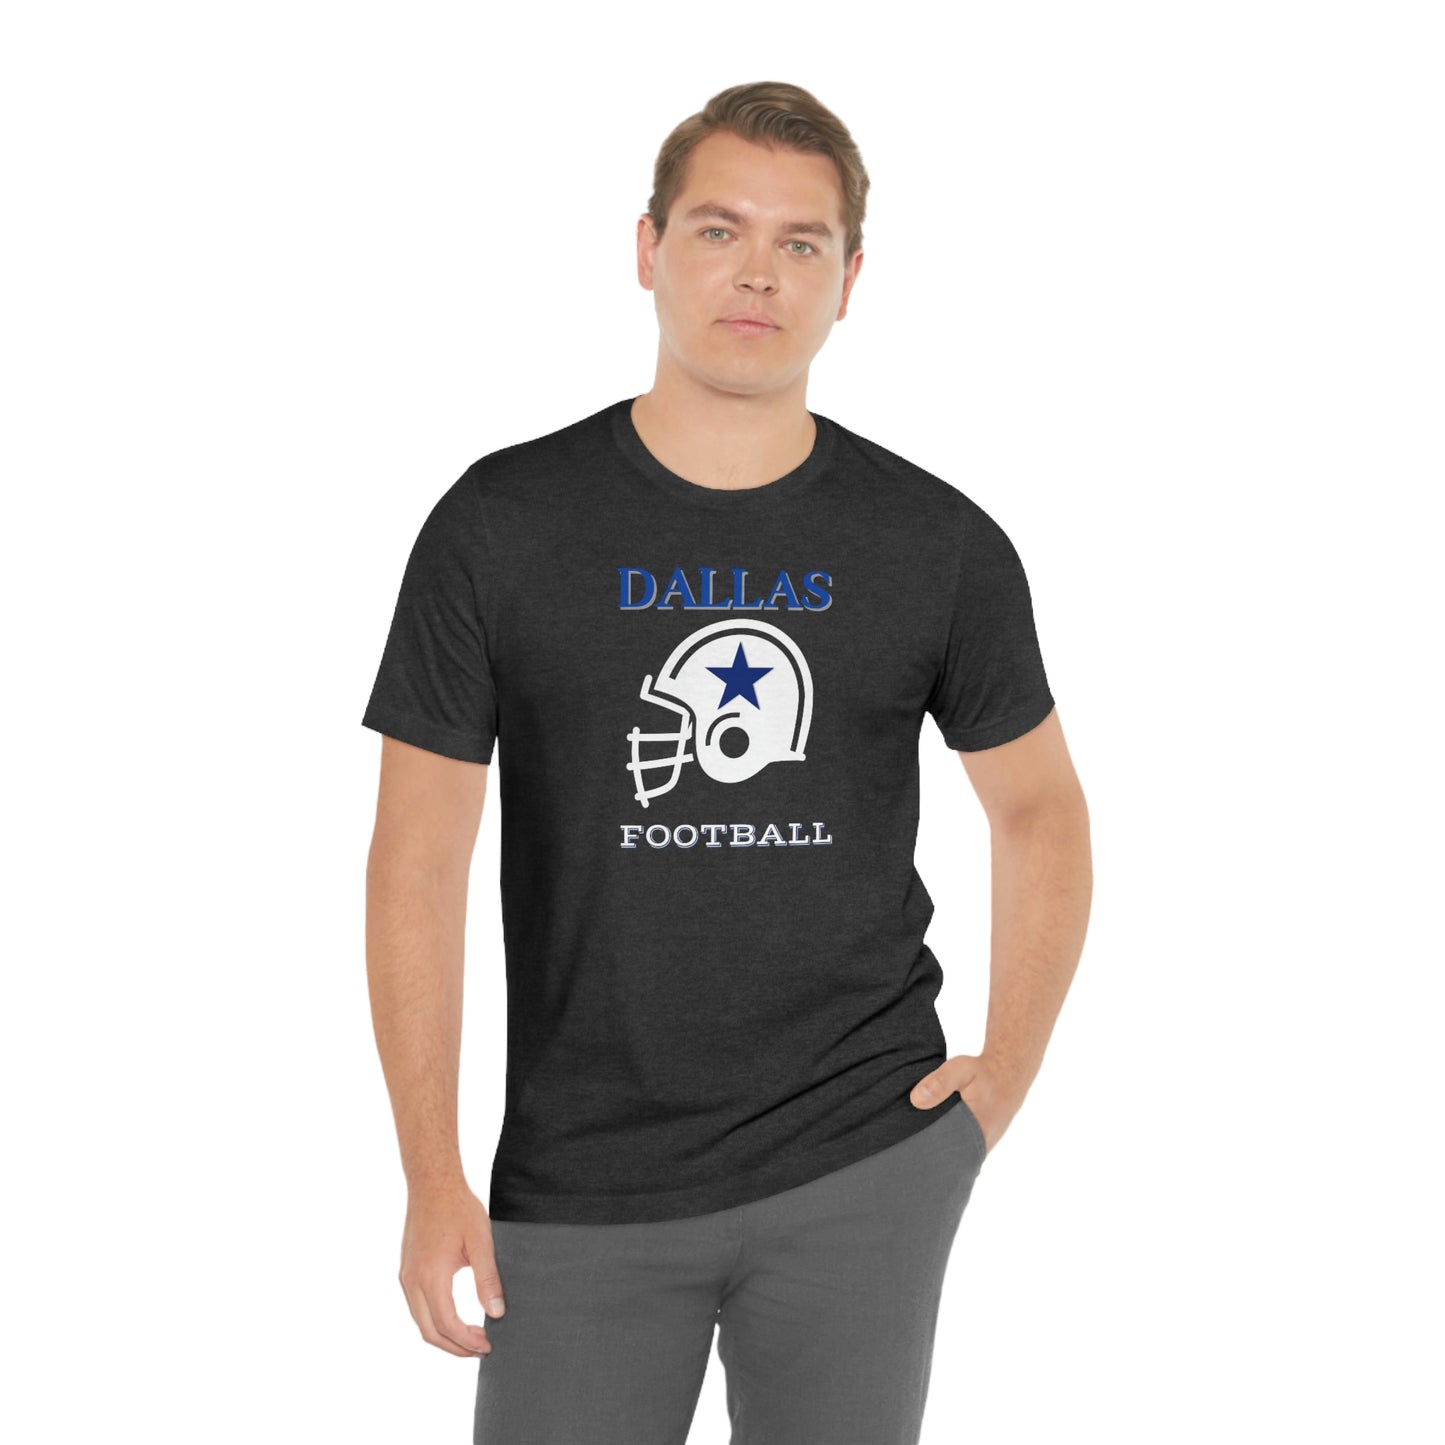 Unisex Jersey Short Sleeve Tee: Dallas Football